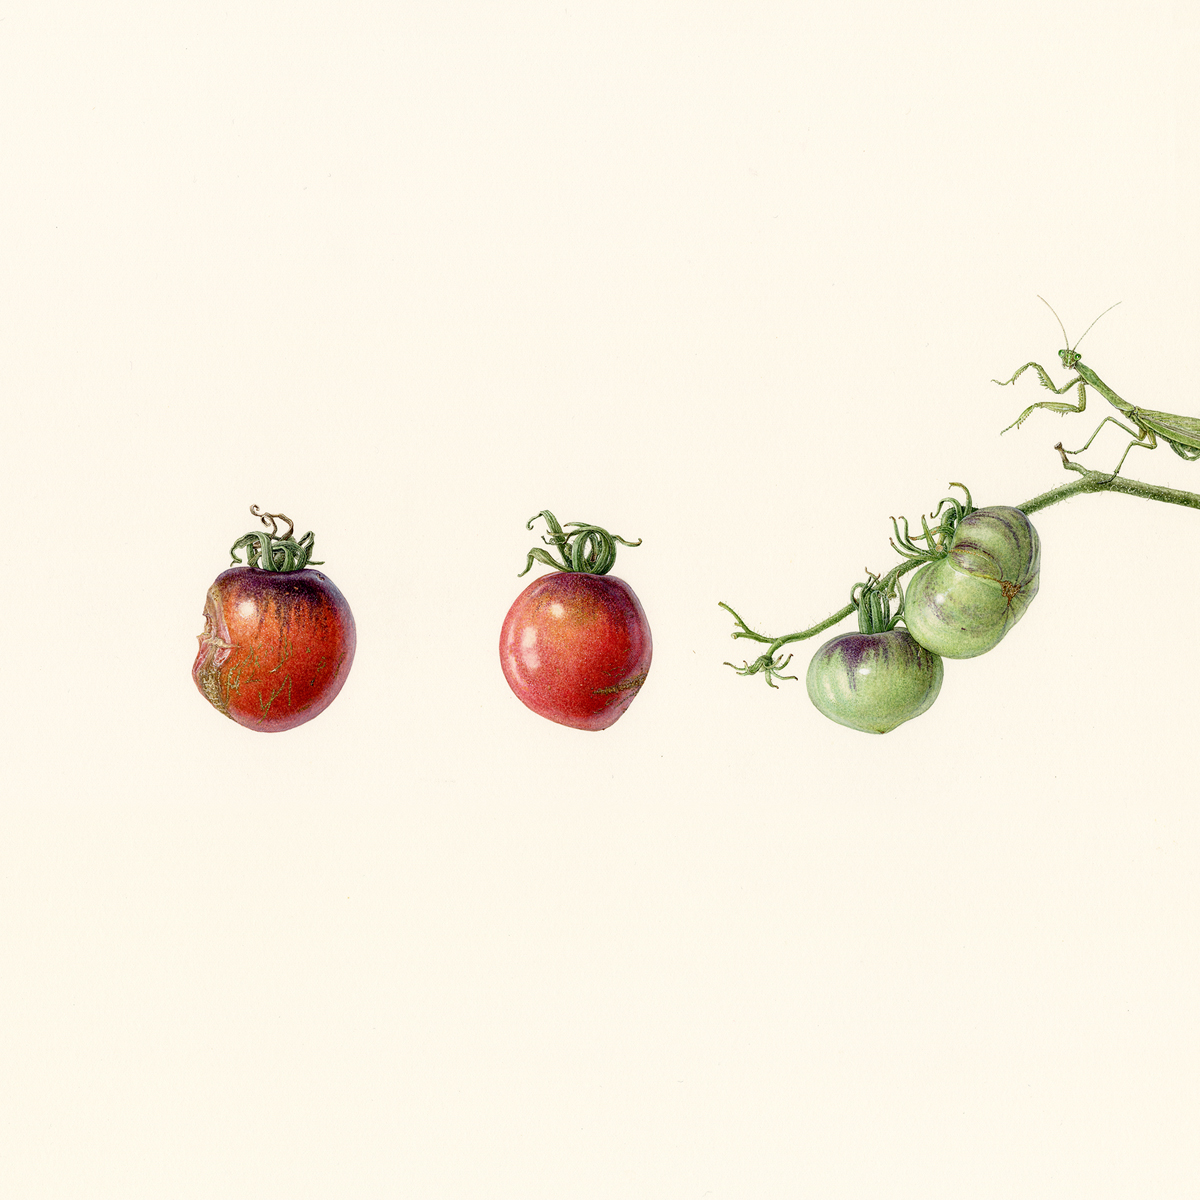 徒然の草　トマトと蟷螂　Turezure no kusa - Tomatoes and a praying mantis
 2020 / Watercolor on paper / 35 x 35 cm